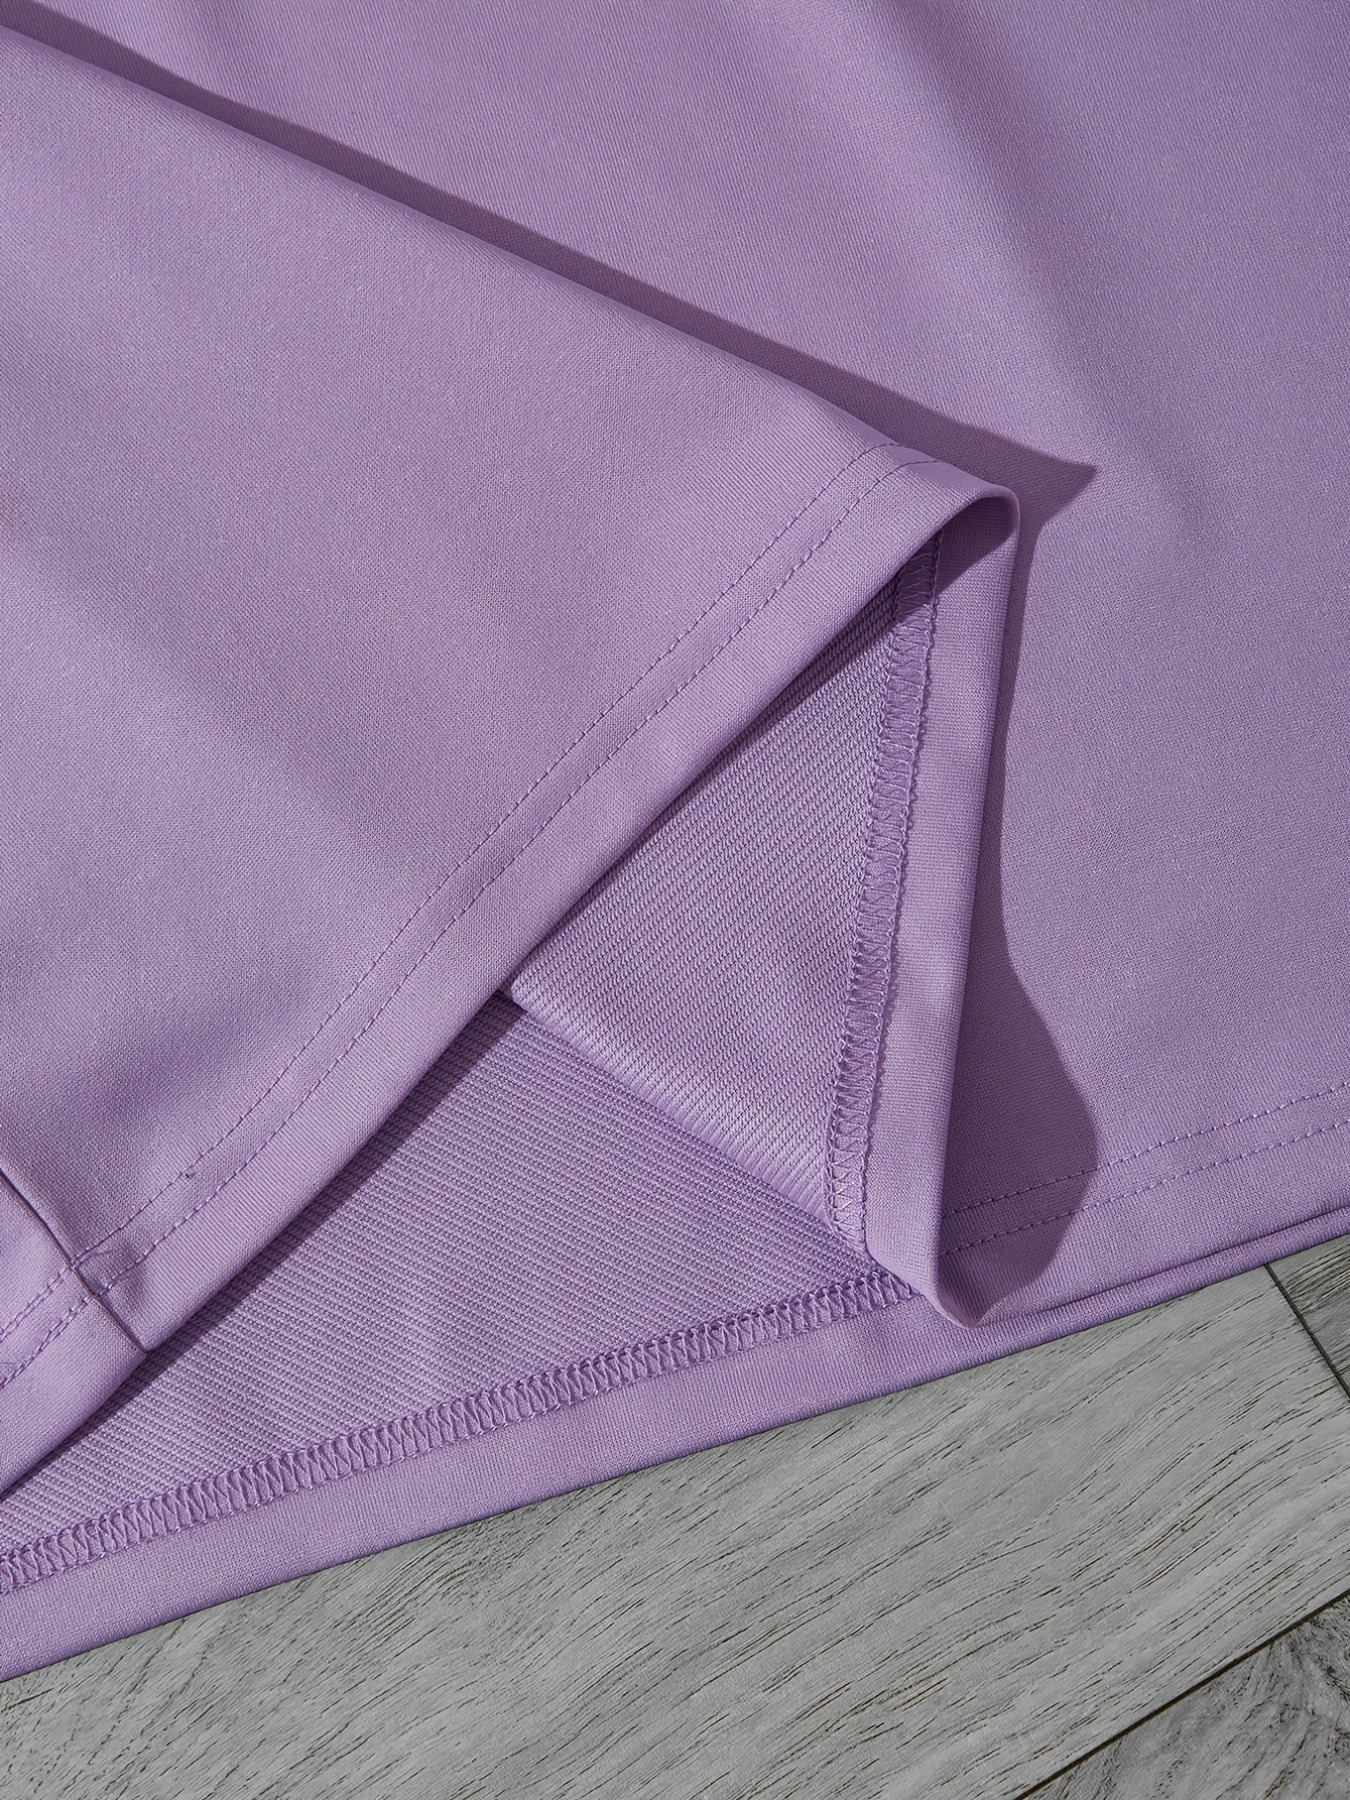 Mrat Cotton Linen Shirt Women Plus Size Short Sleeve Blouses